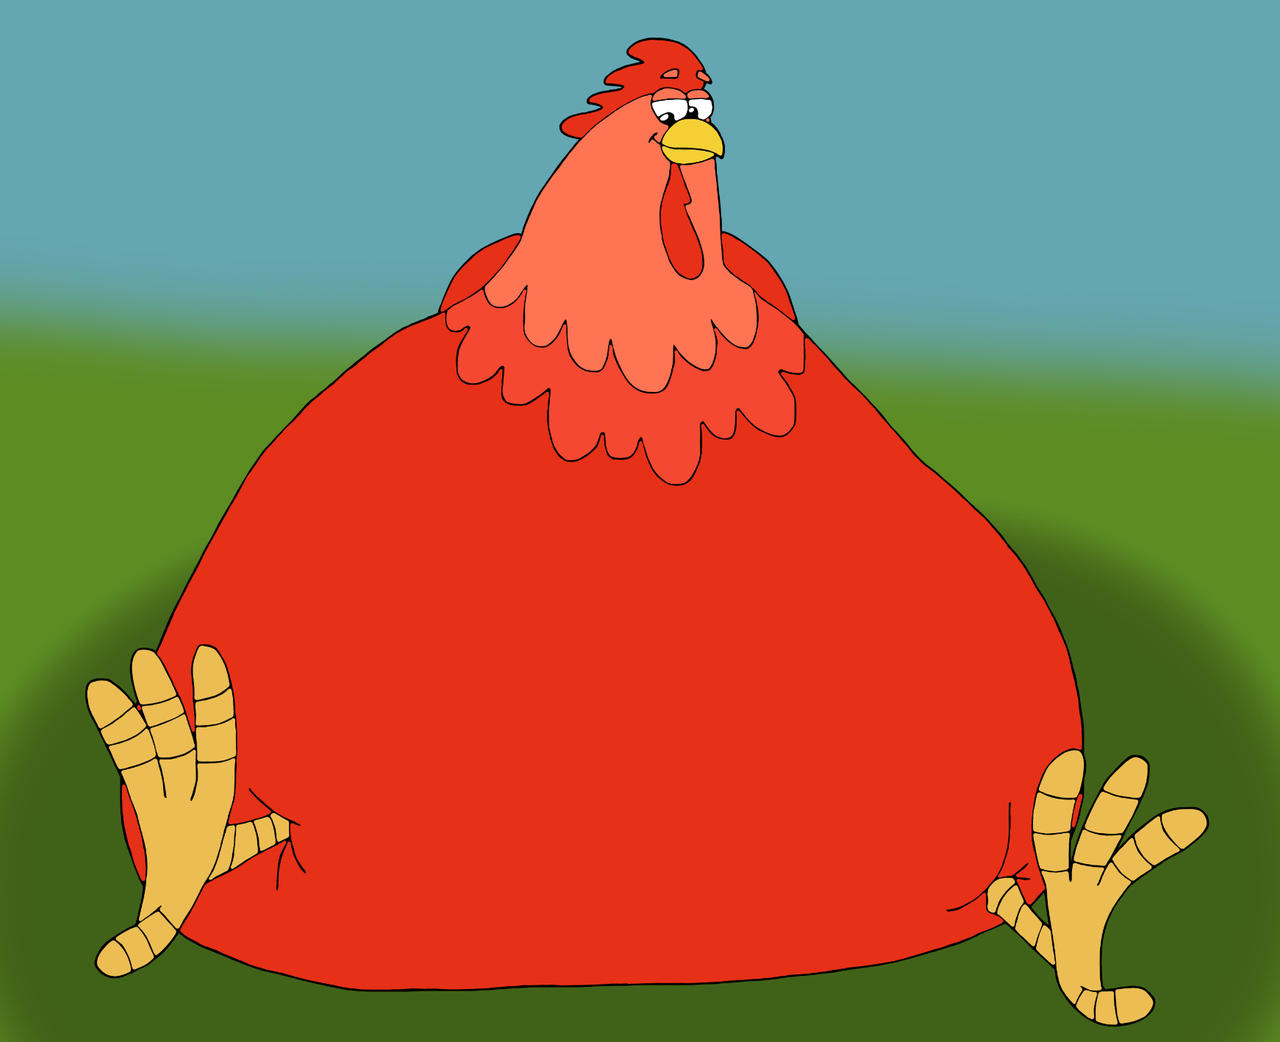 the_big_fat_red_chicken_by_mase0828_dfiznvx-fullview (1).jpg